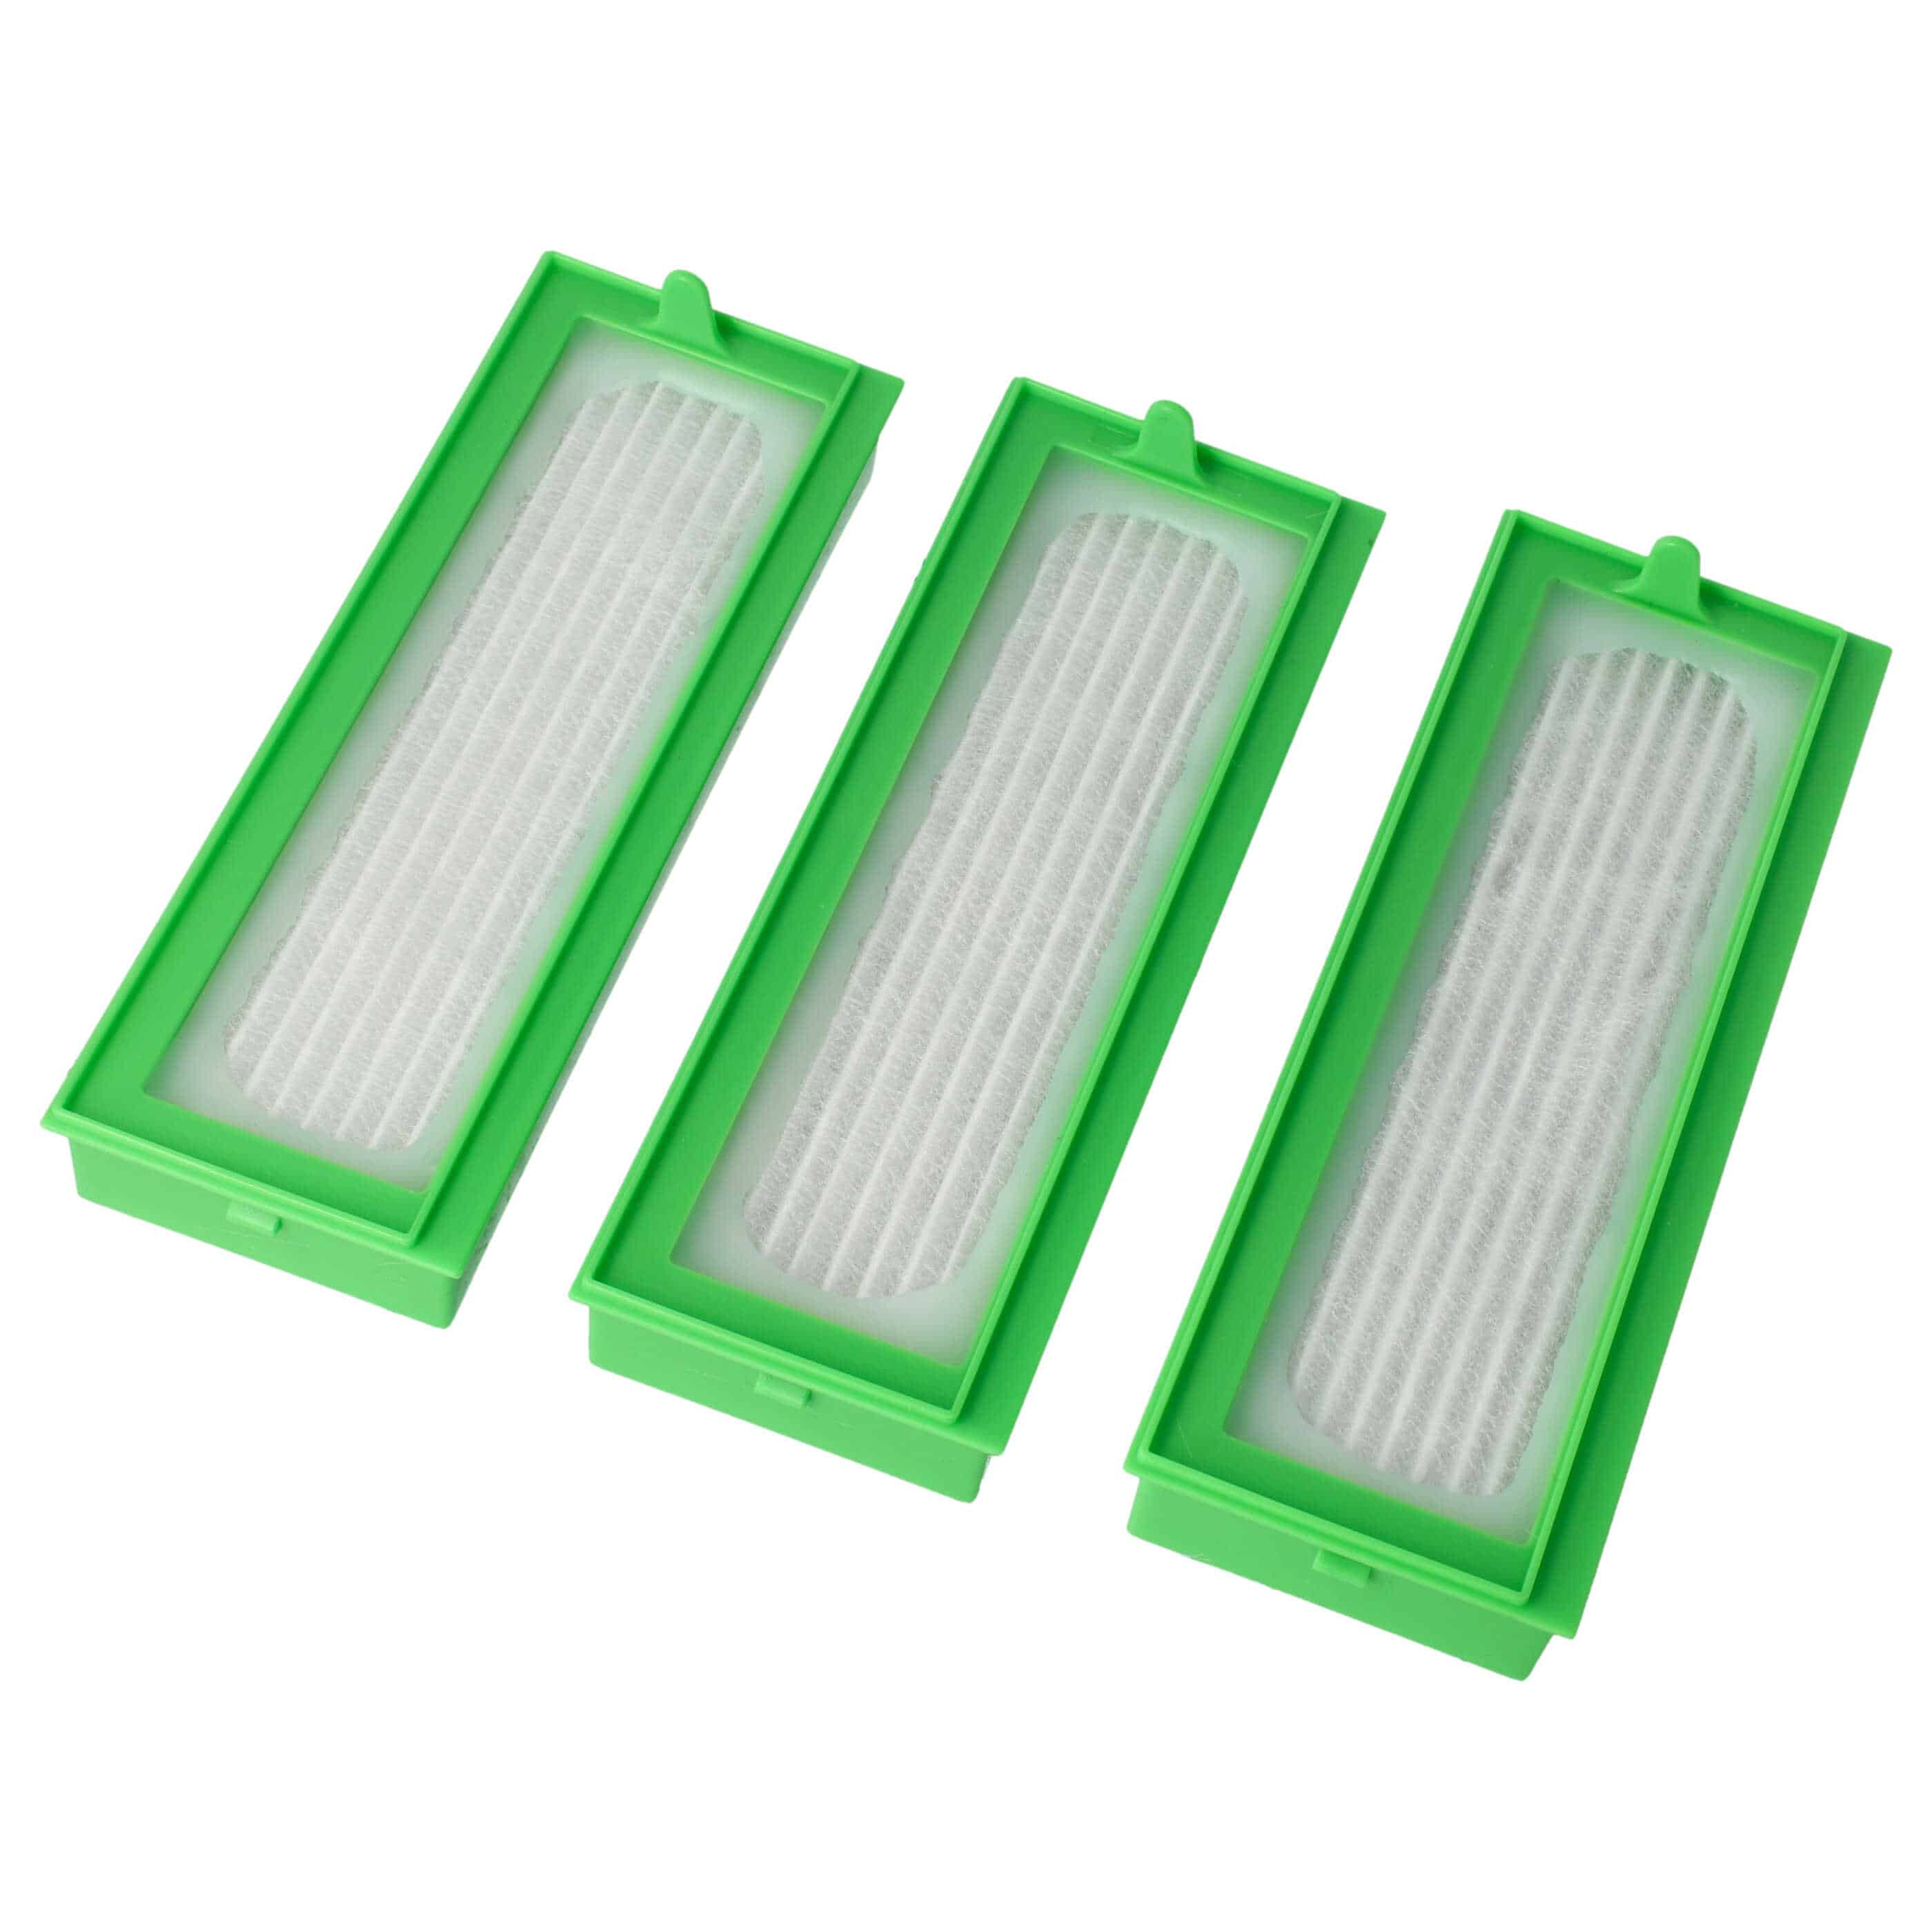 3x HEPA filter suitable for Vorwerk Kobold VR-300, VR300, VR-200, VR200 Vacuum Cleaner